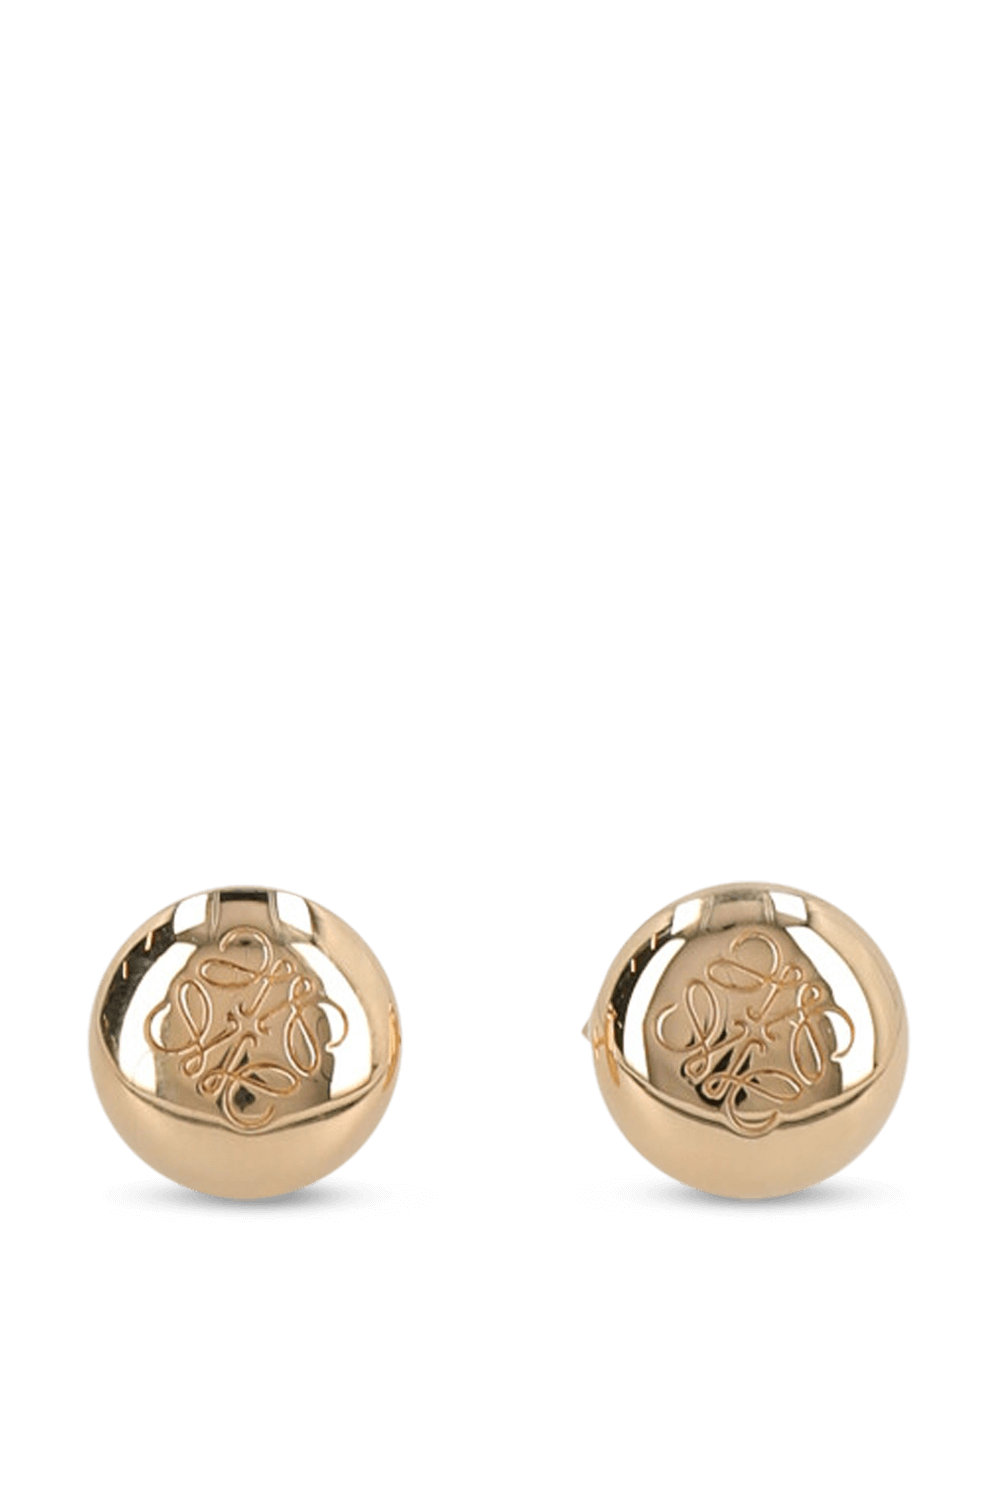 עגילים עם הטבעת לוגו LOEWE